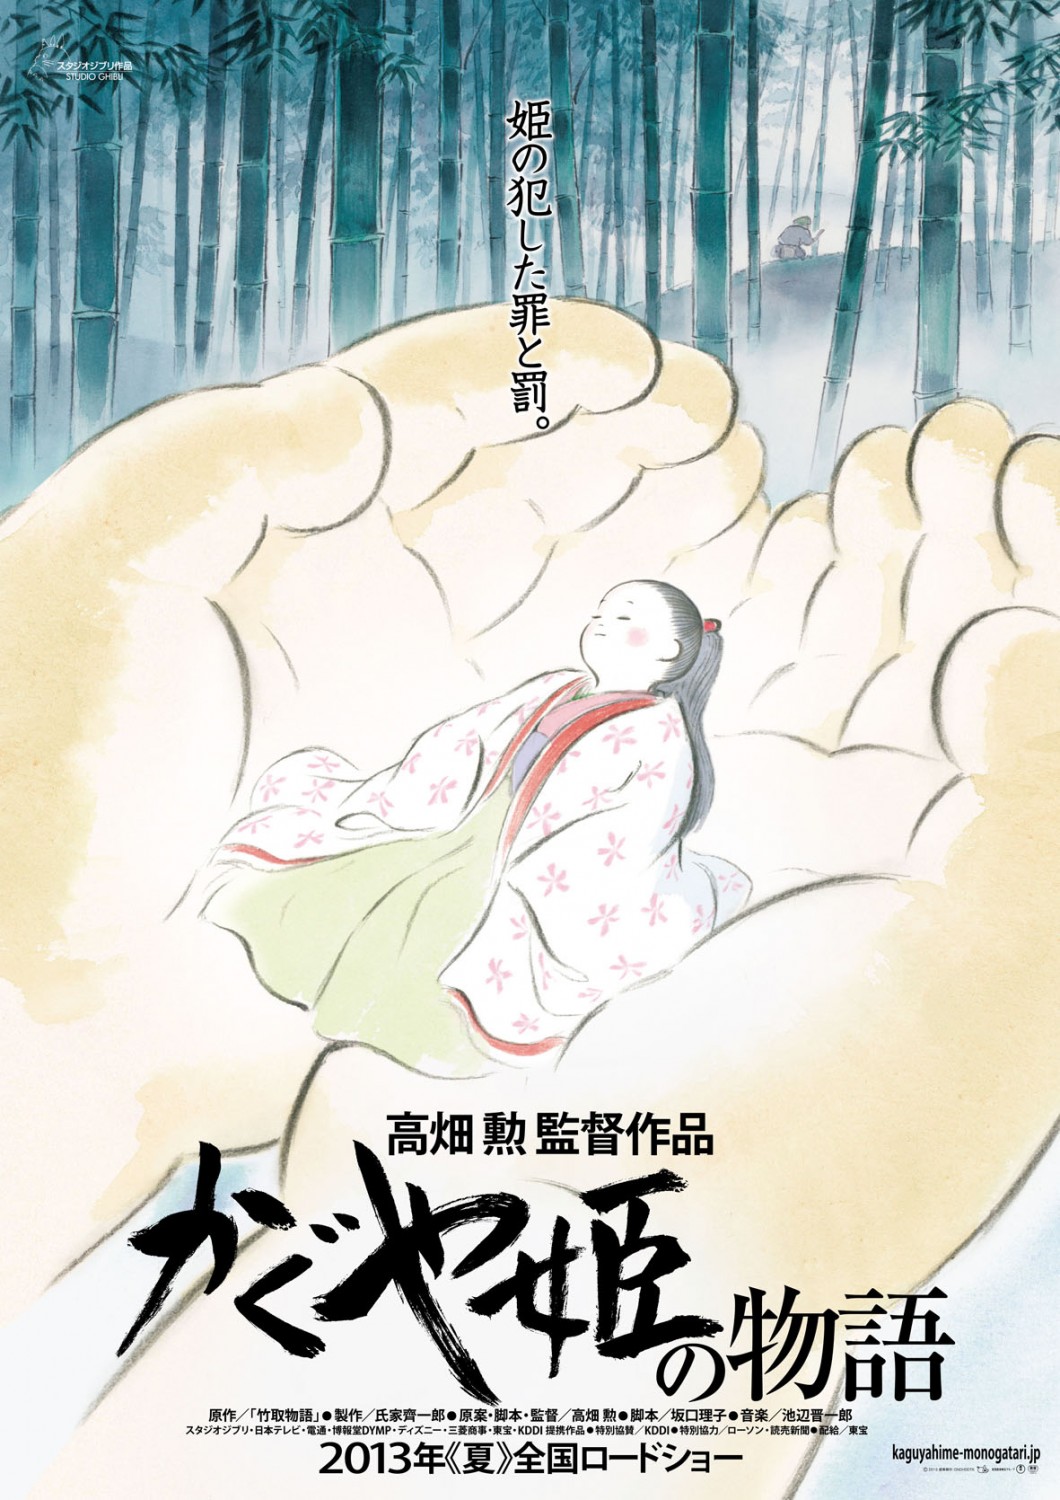 Extra Large Movie Poster Image for Kaguyahime no monogatari (#1 of 3)